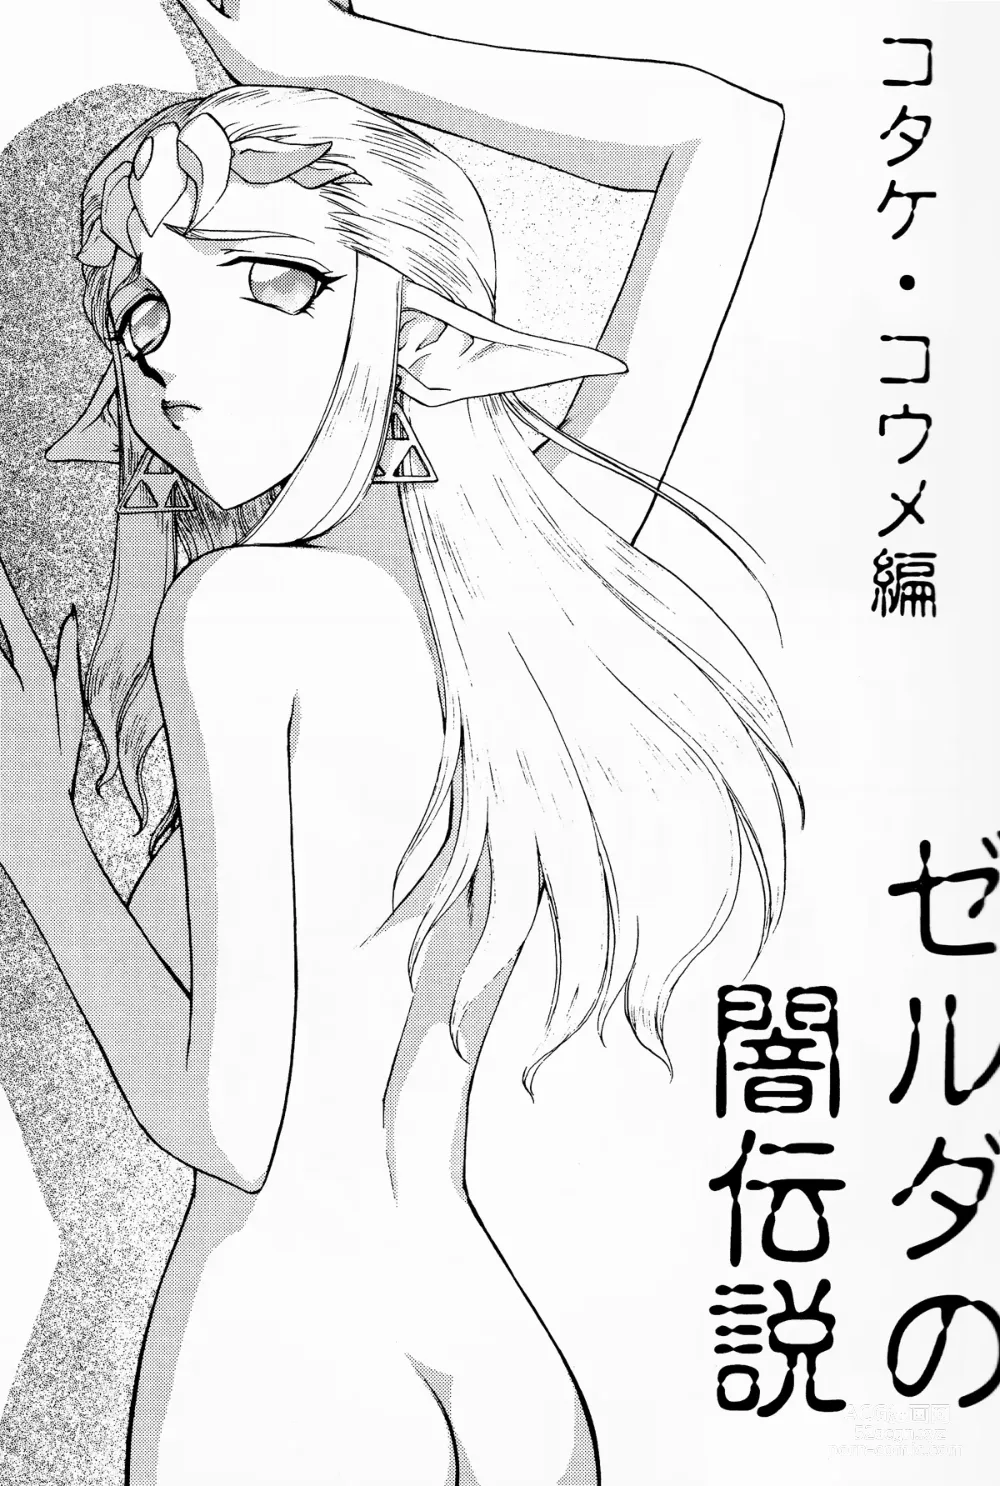 Page 6 of doujinshi NISE Zelda no Densetsu Shinshou